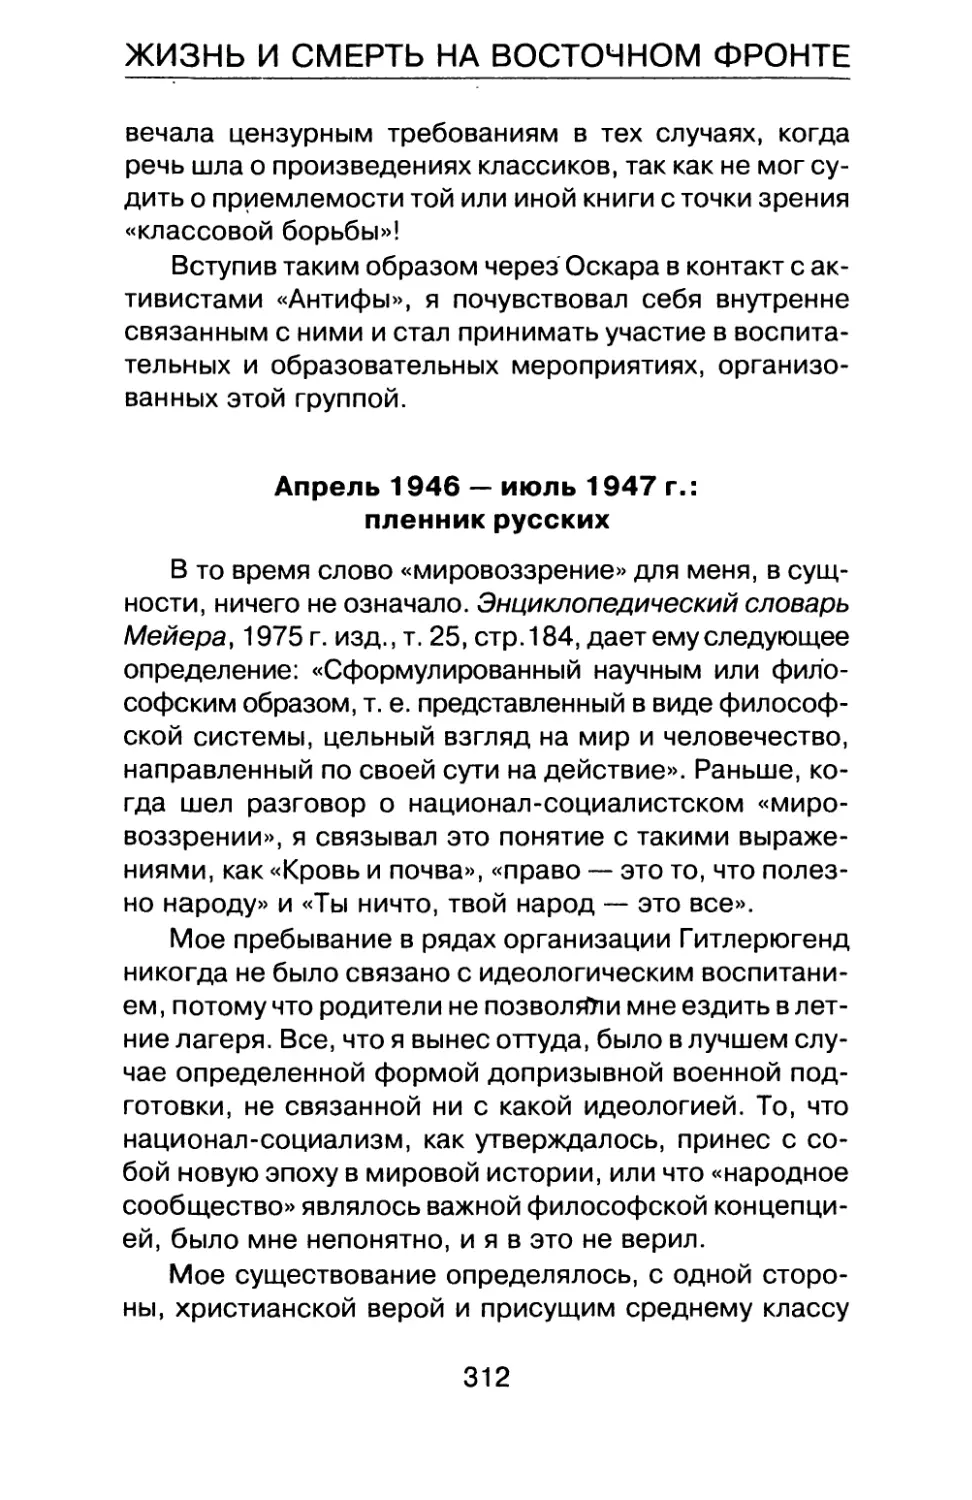 Апрель 1946 — июль 1947 г.: пленник русских